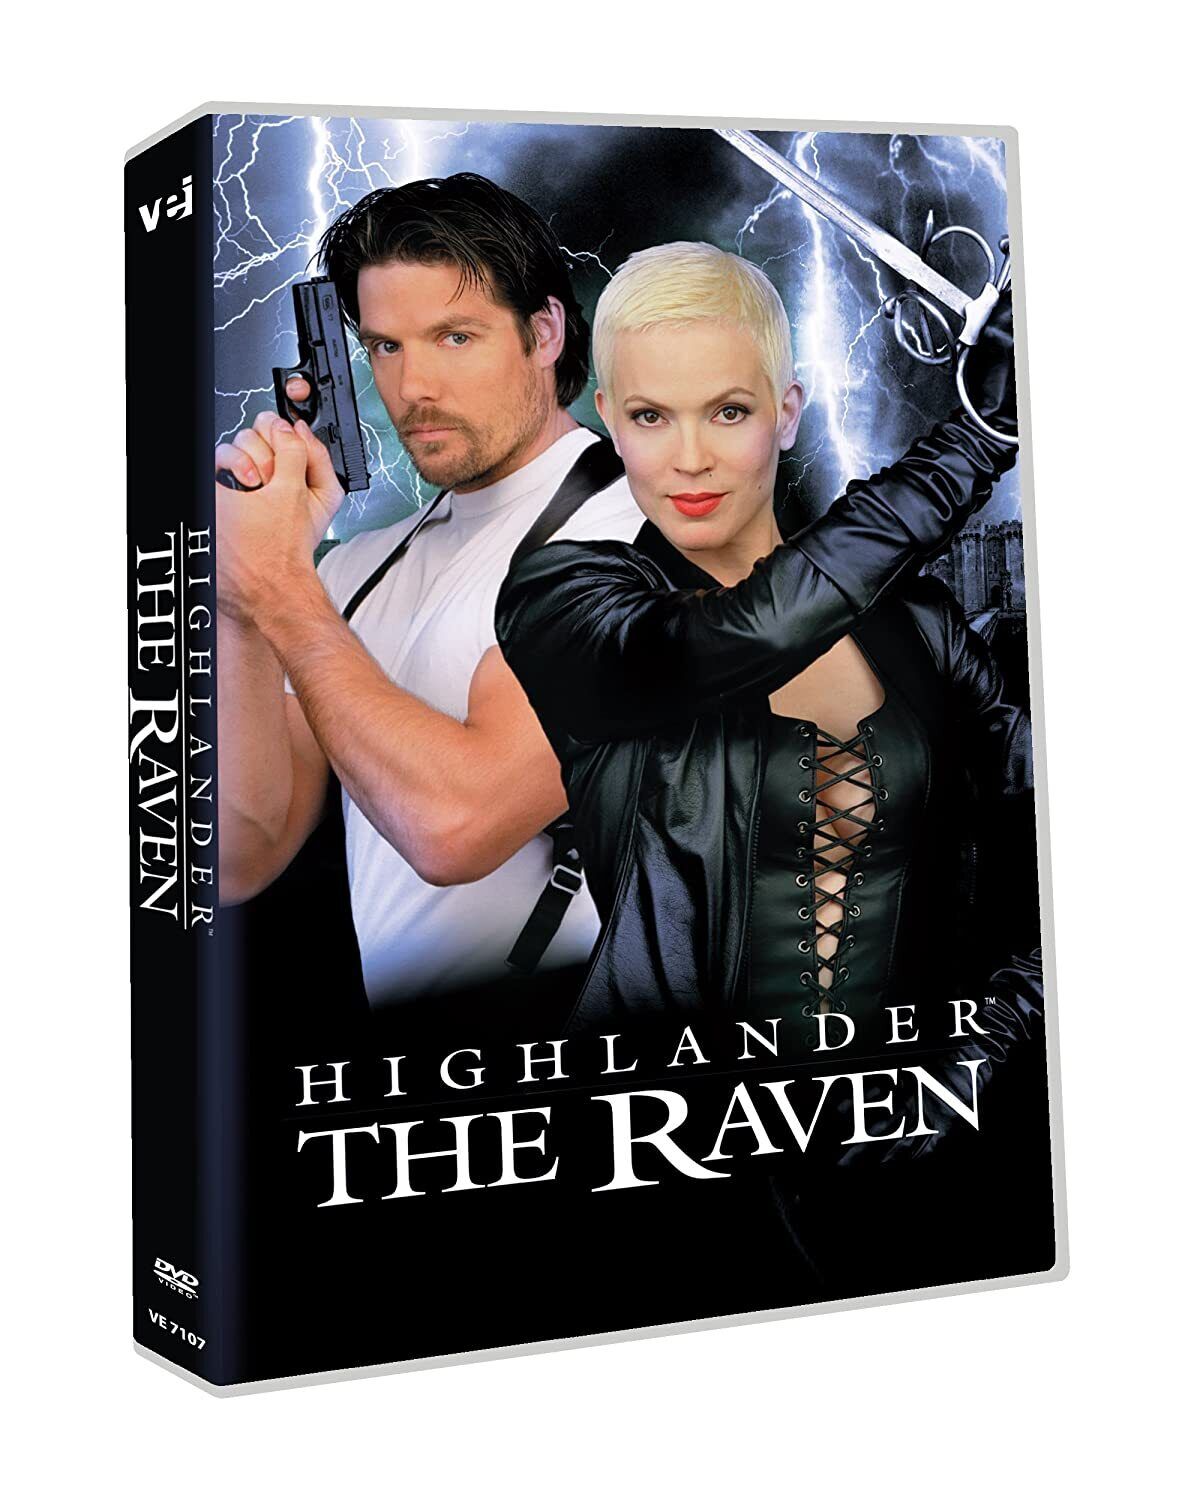 Highlander Complete TV Series Season 1-6 119 Episodes + Raven